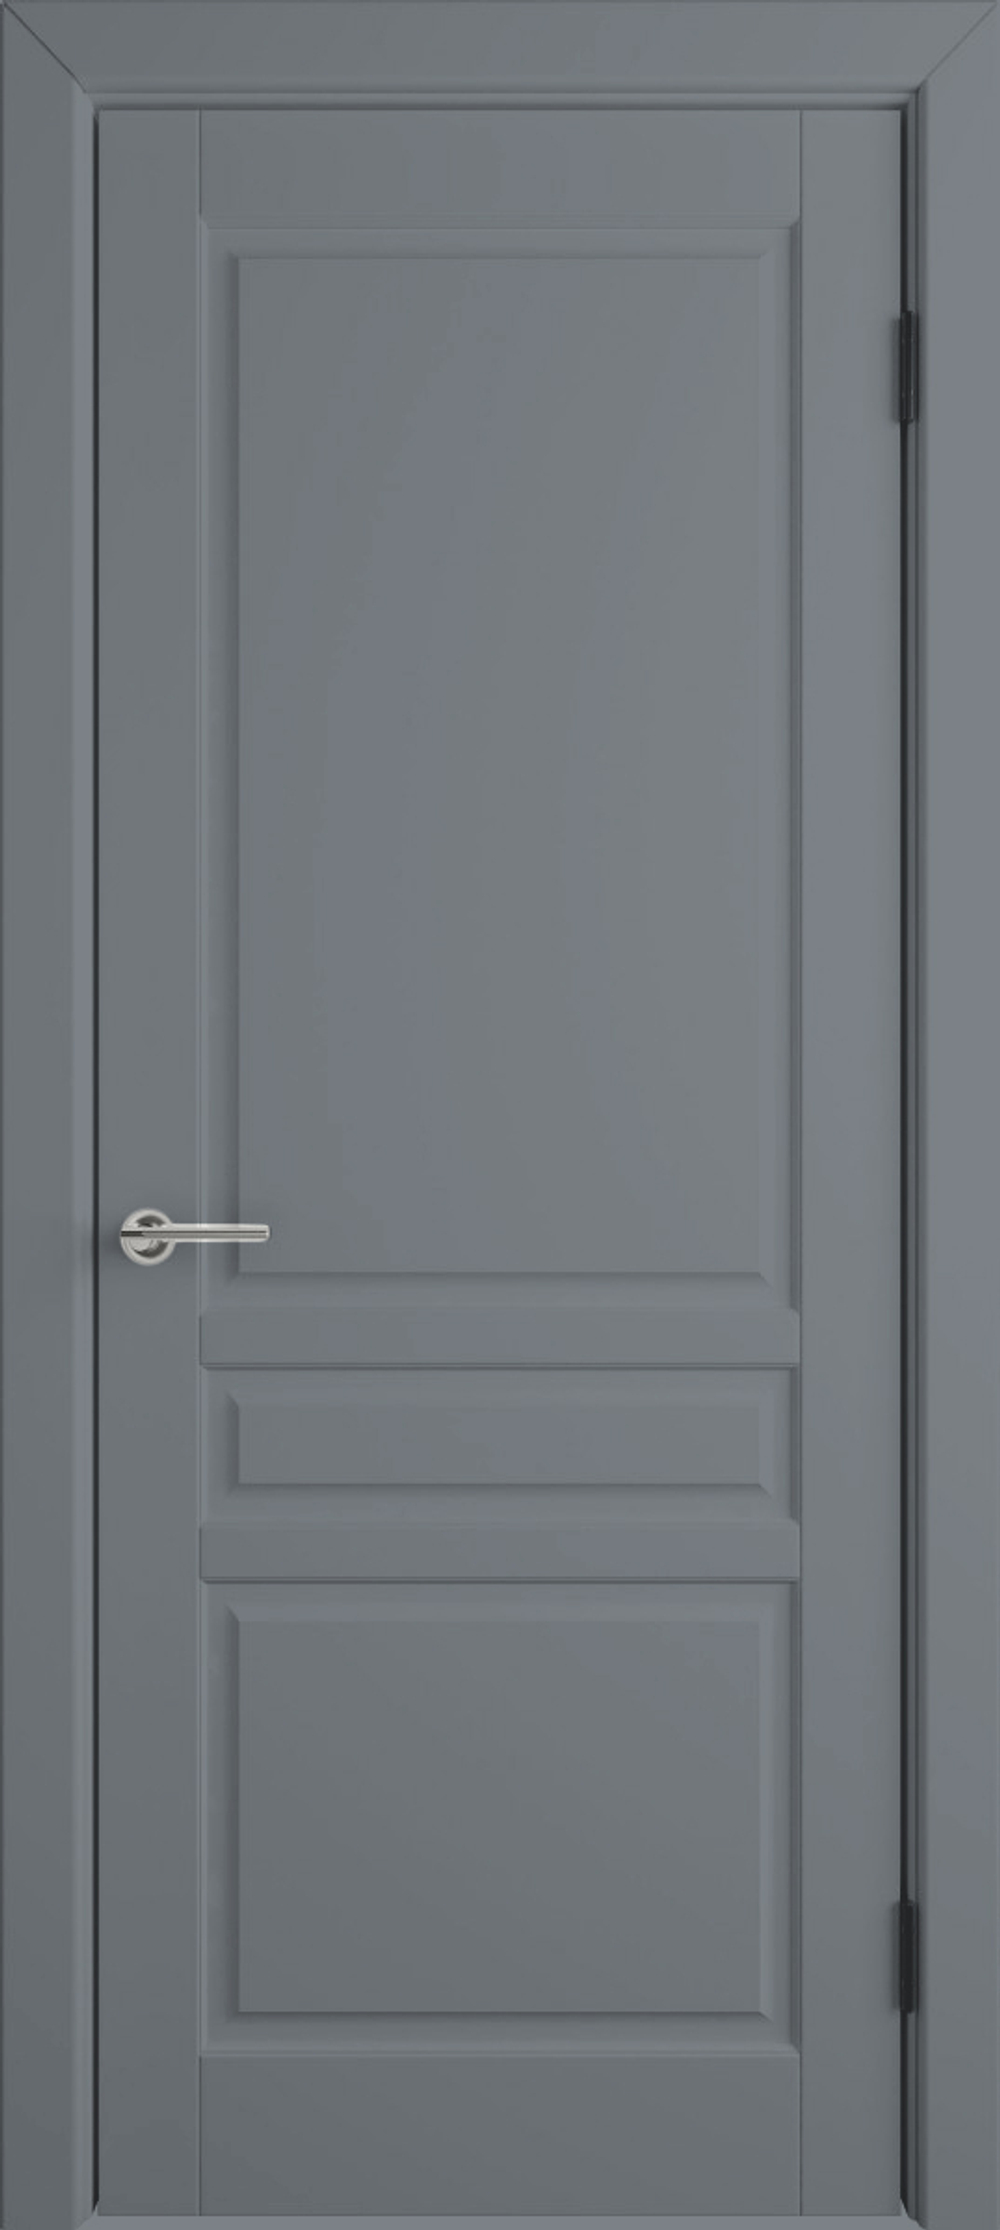 Межкомнатная дверь VFD (ВФД) Stockholm (Стокгольм) Silver (RAL 7042, эмаль серая) 56ДГ